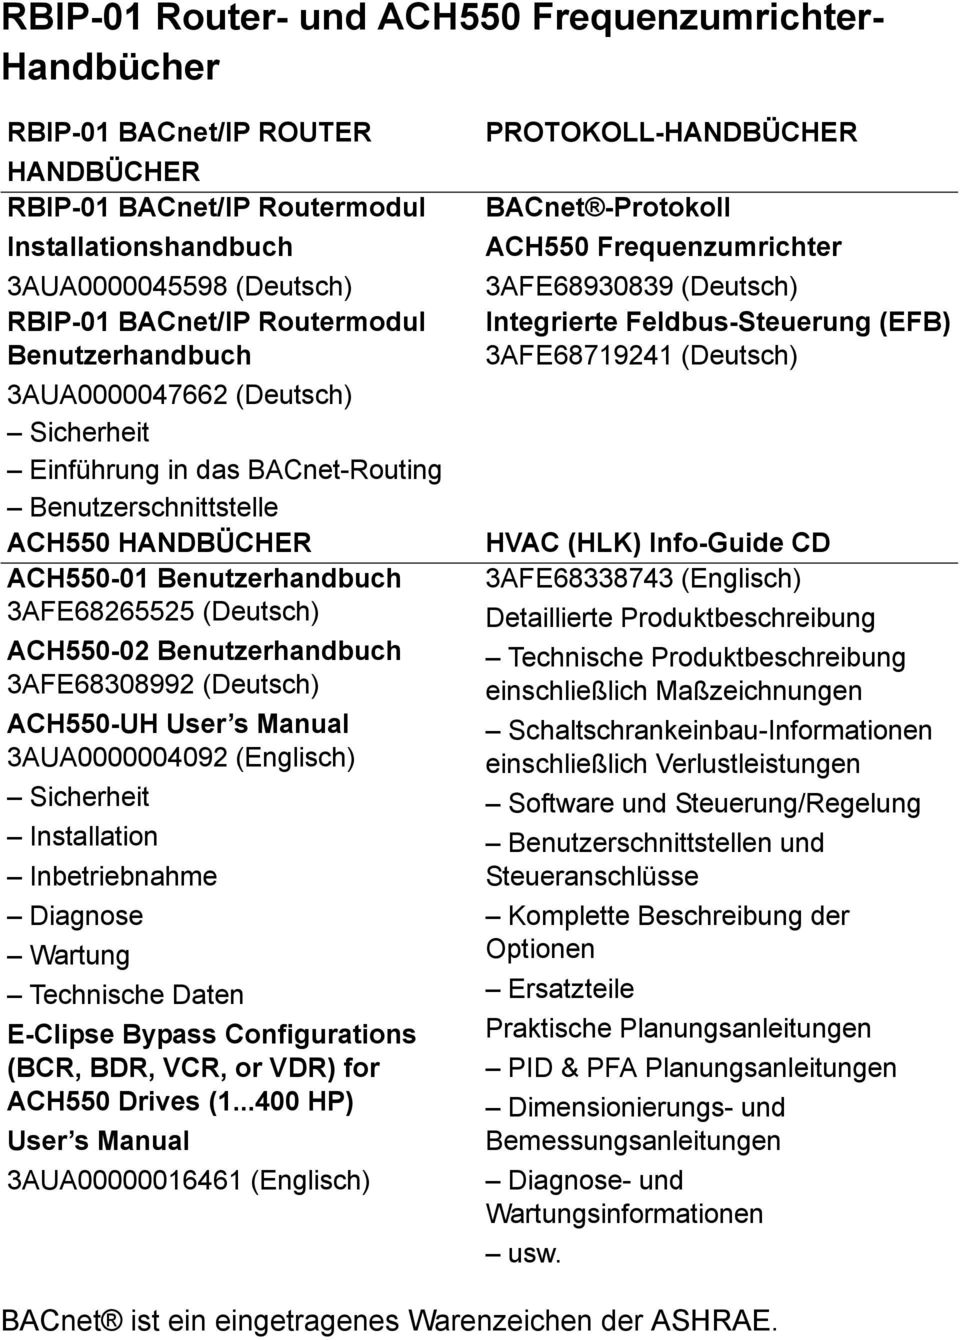 Benutzerhandbuch 3AFE68308992 (Deutsch) ACH550-UH User s Manual 3AUA0000004092 (Englisch) Sicherheit Installation Inbetriebnahme Diagnose Wartung Technische Daten E-Clipse Bypass Configurations (BCR,